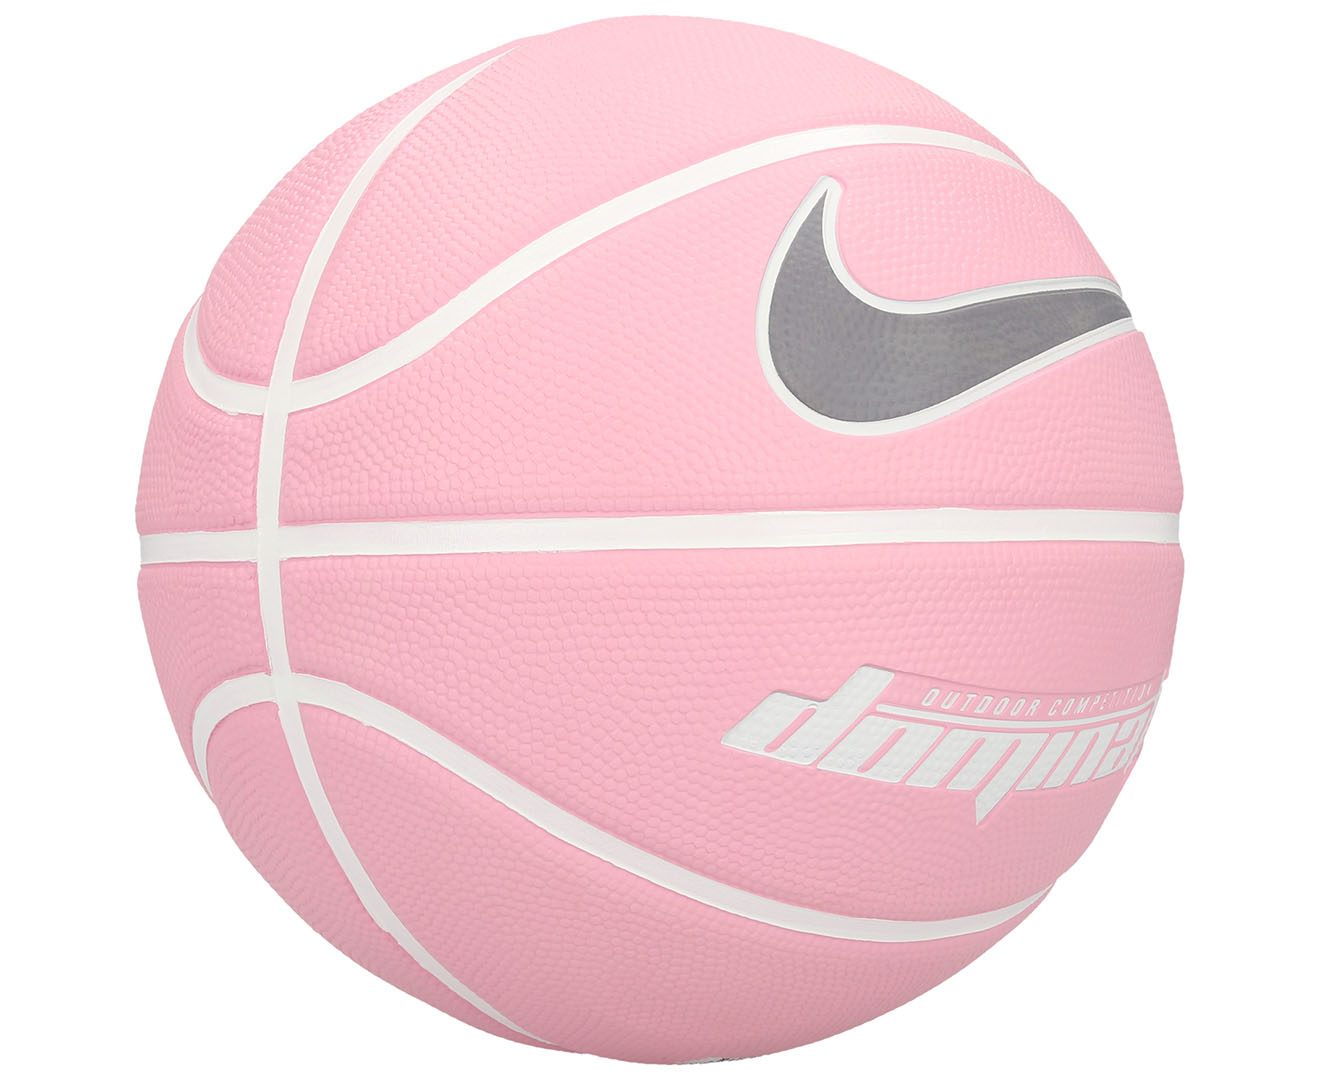 nike basketball ball pink